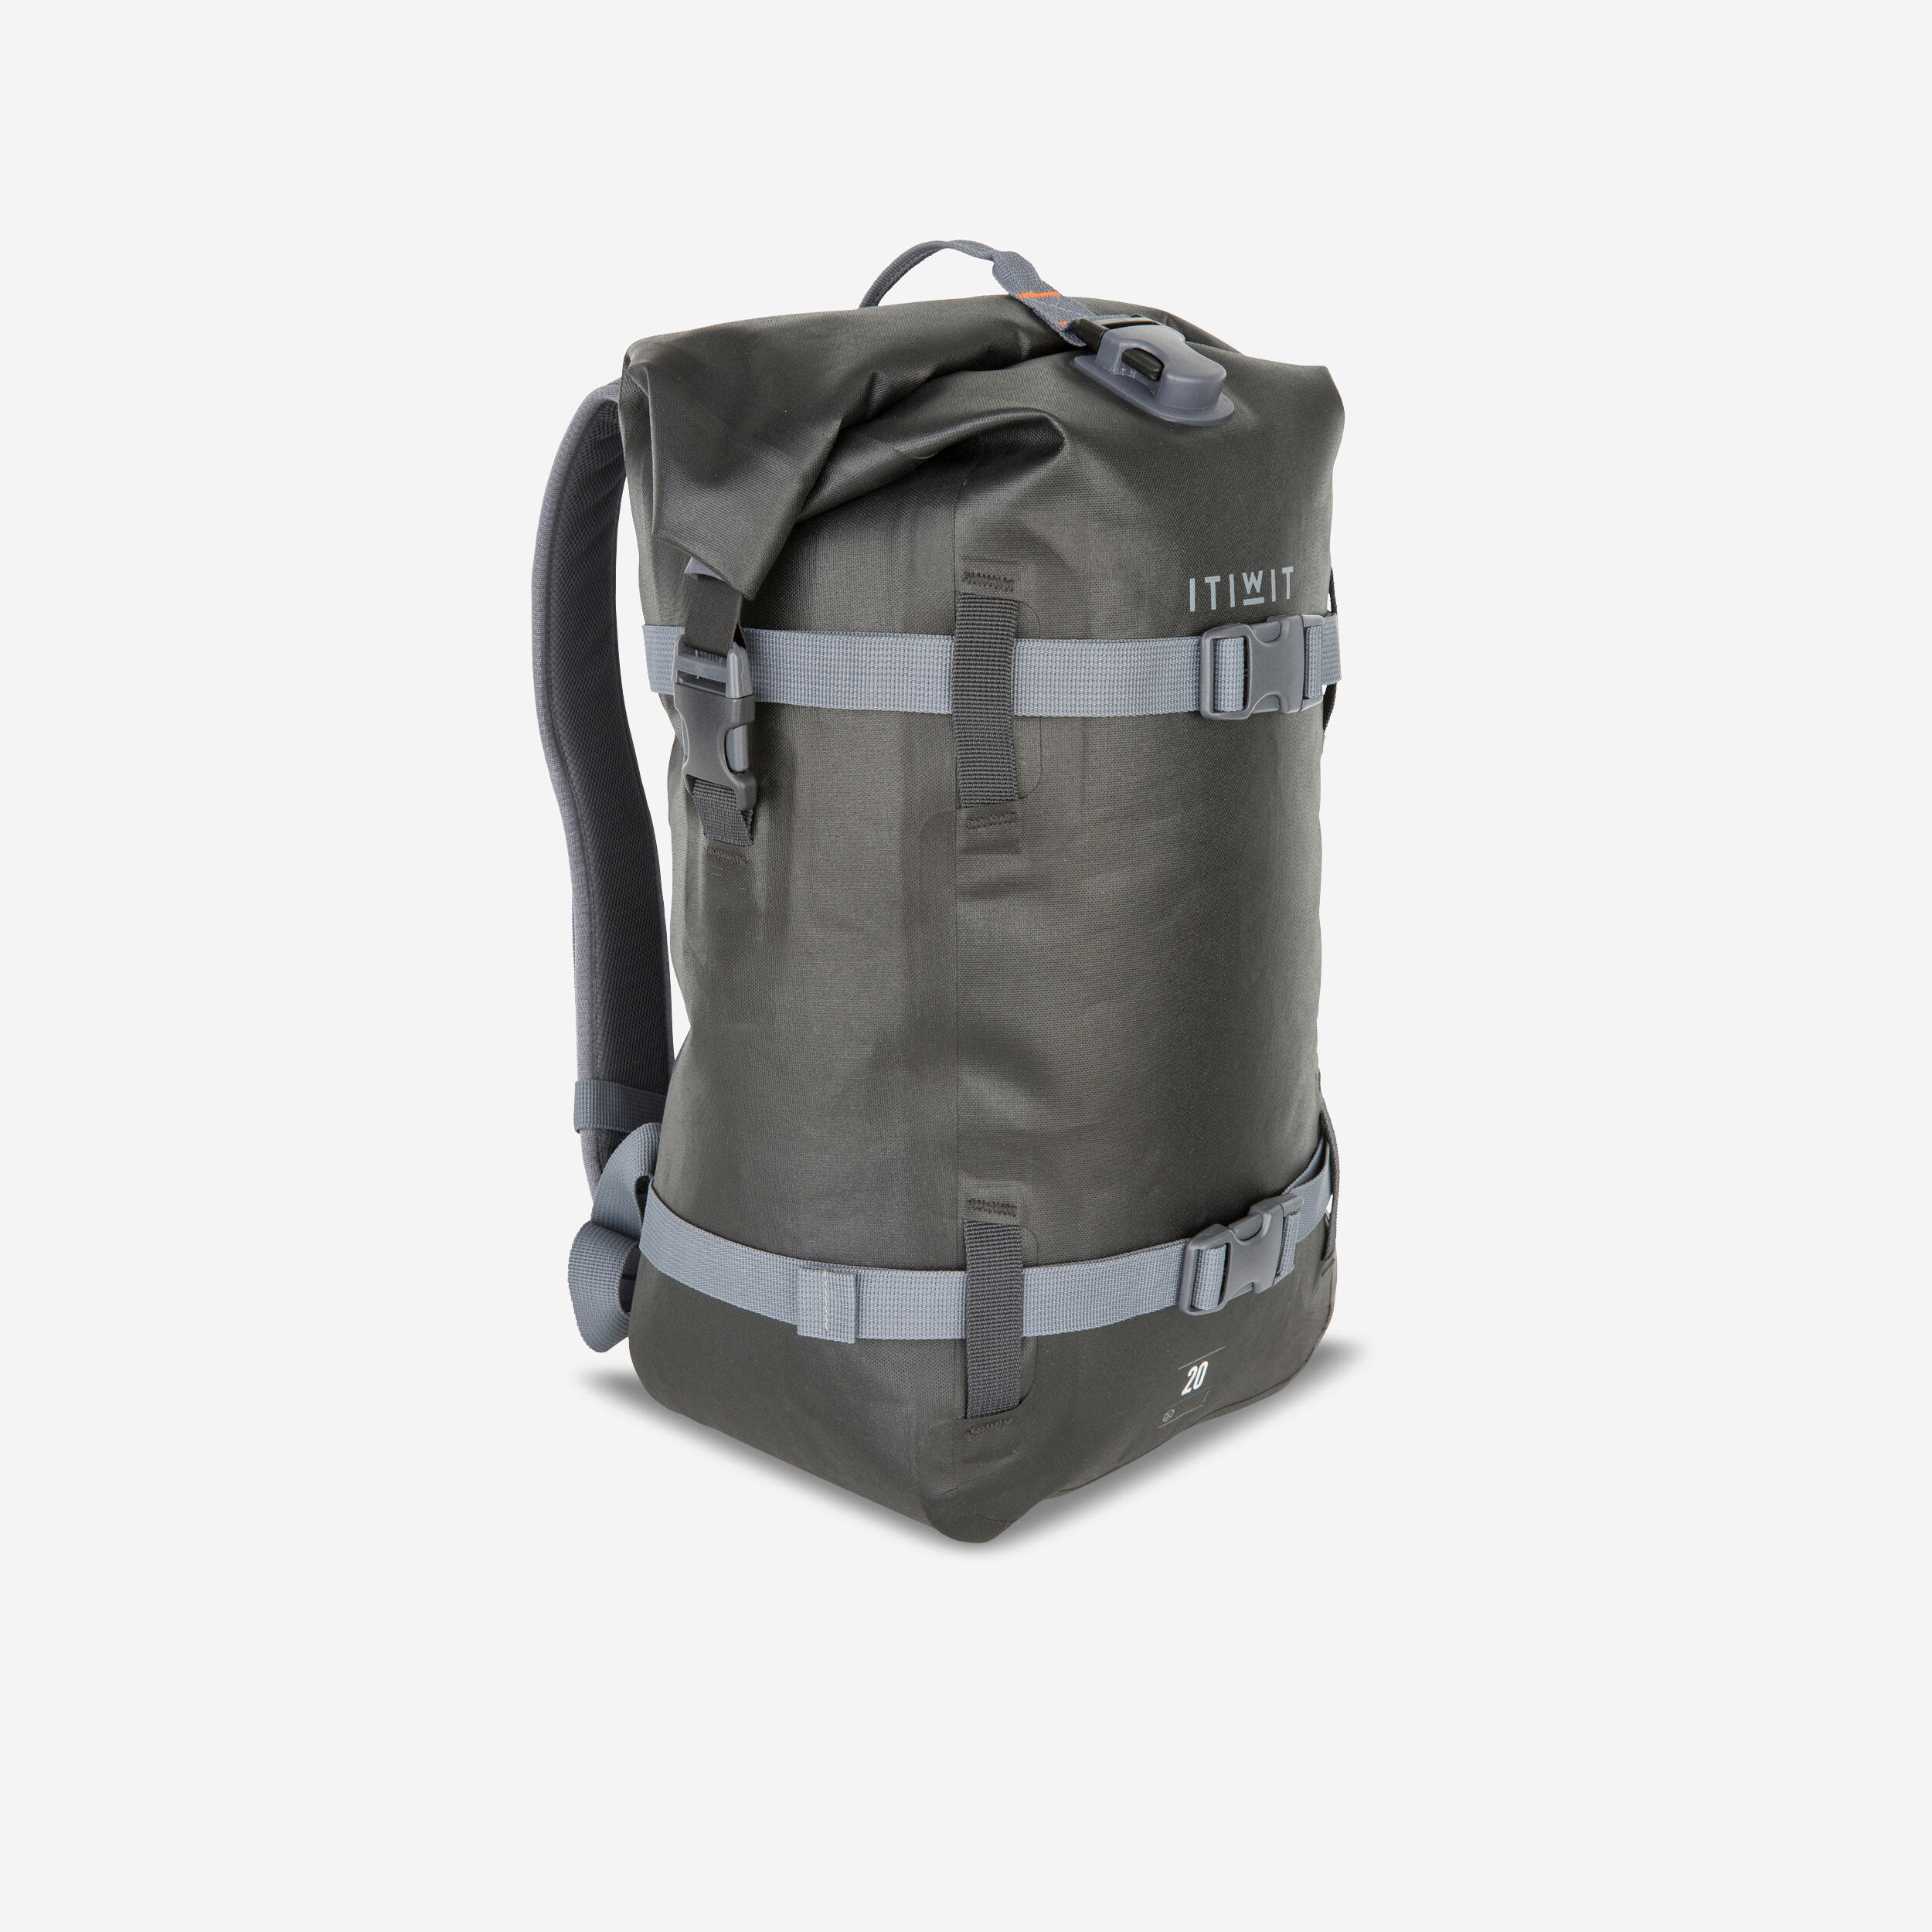 Waterproof Bags - Decathlon